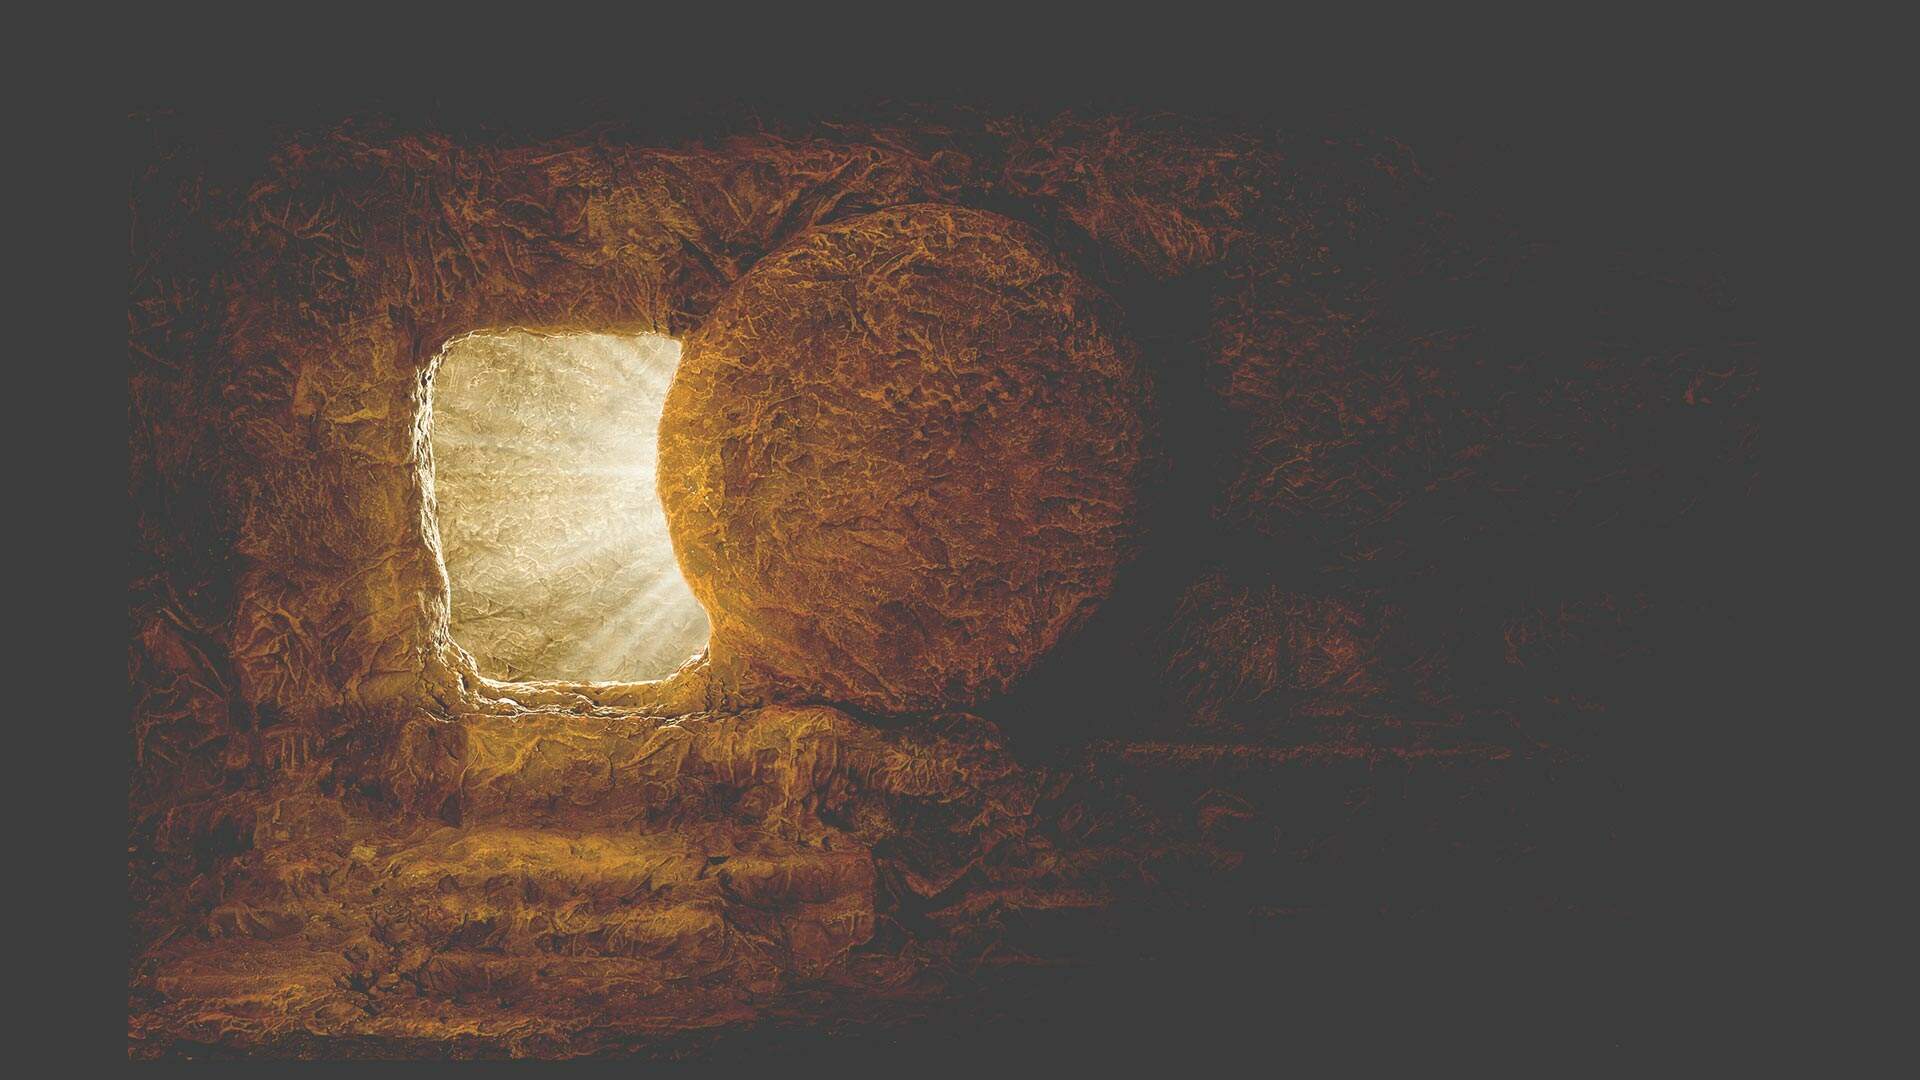 Qual a diferença entre ressurreição e reencarnação? - Rádio ...